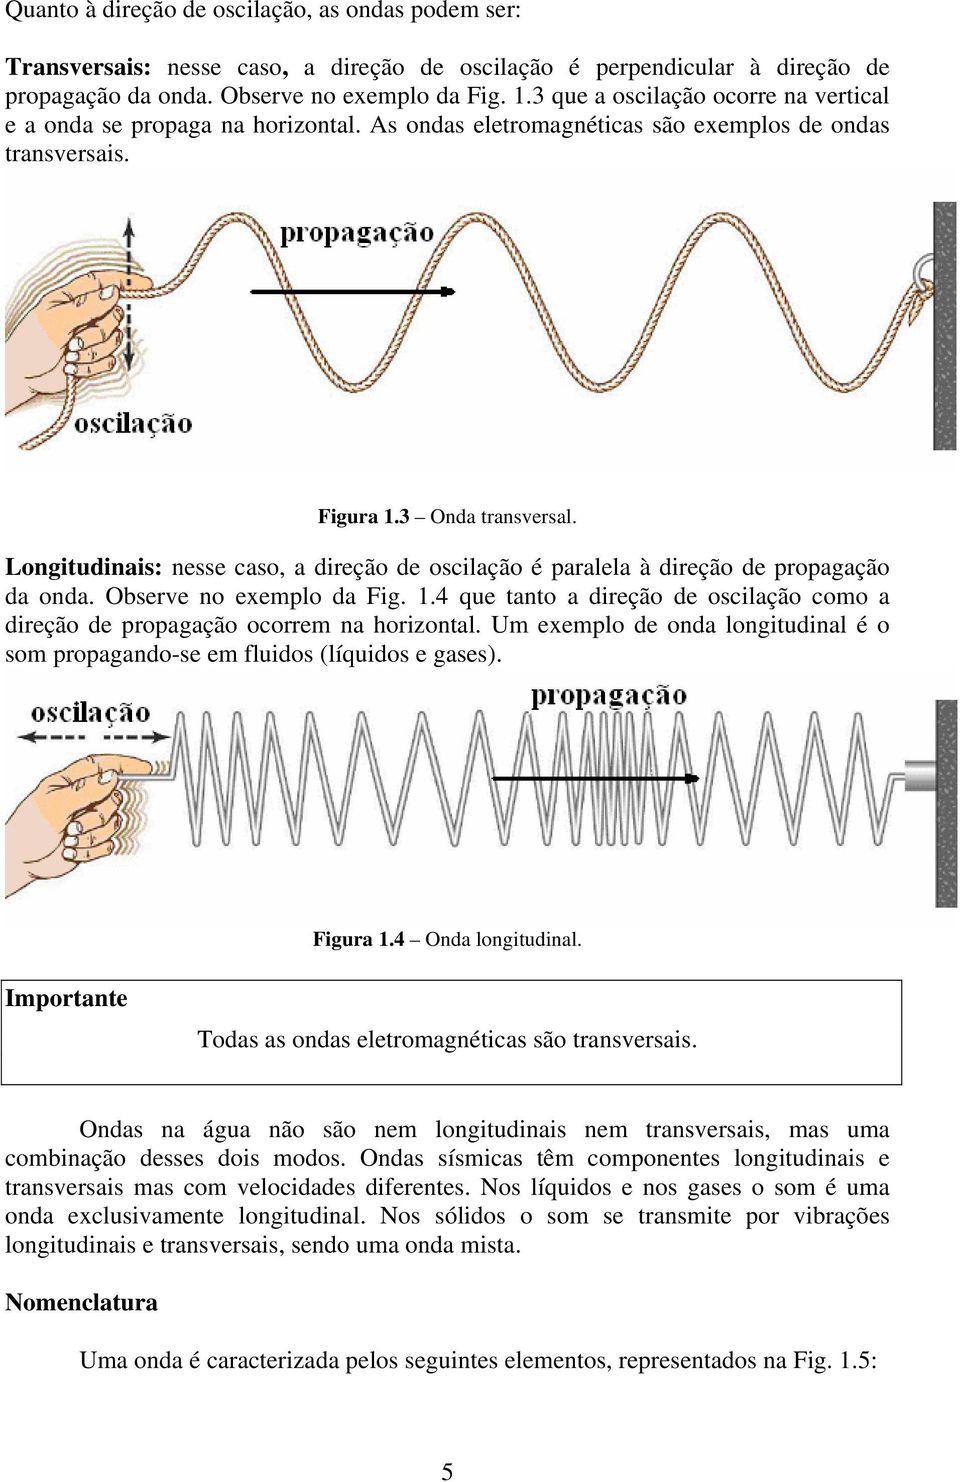 Longitudinais: nesse caso, a direção de oscilação é paralela à direção de propagação da onda. Observe no exemplo da Fig. 1.